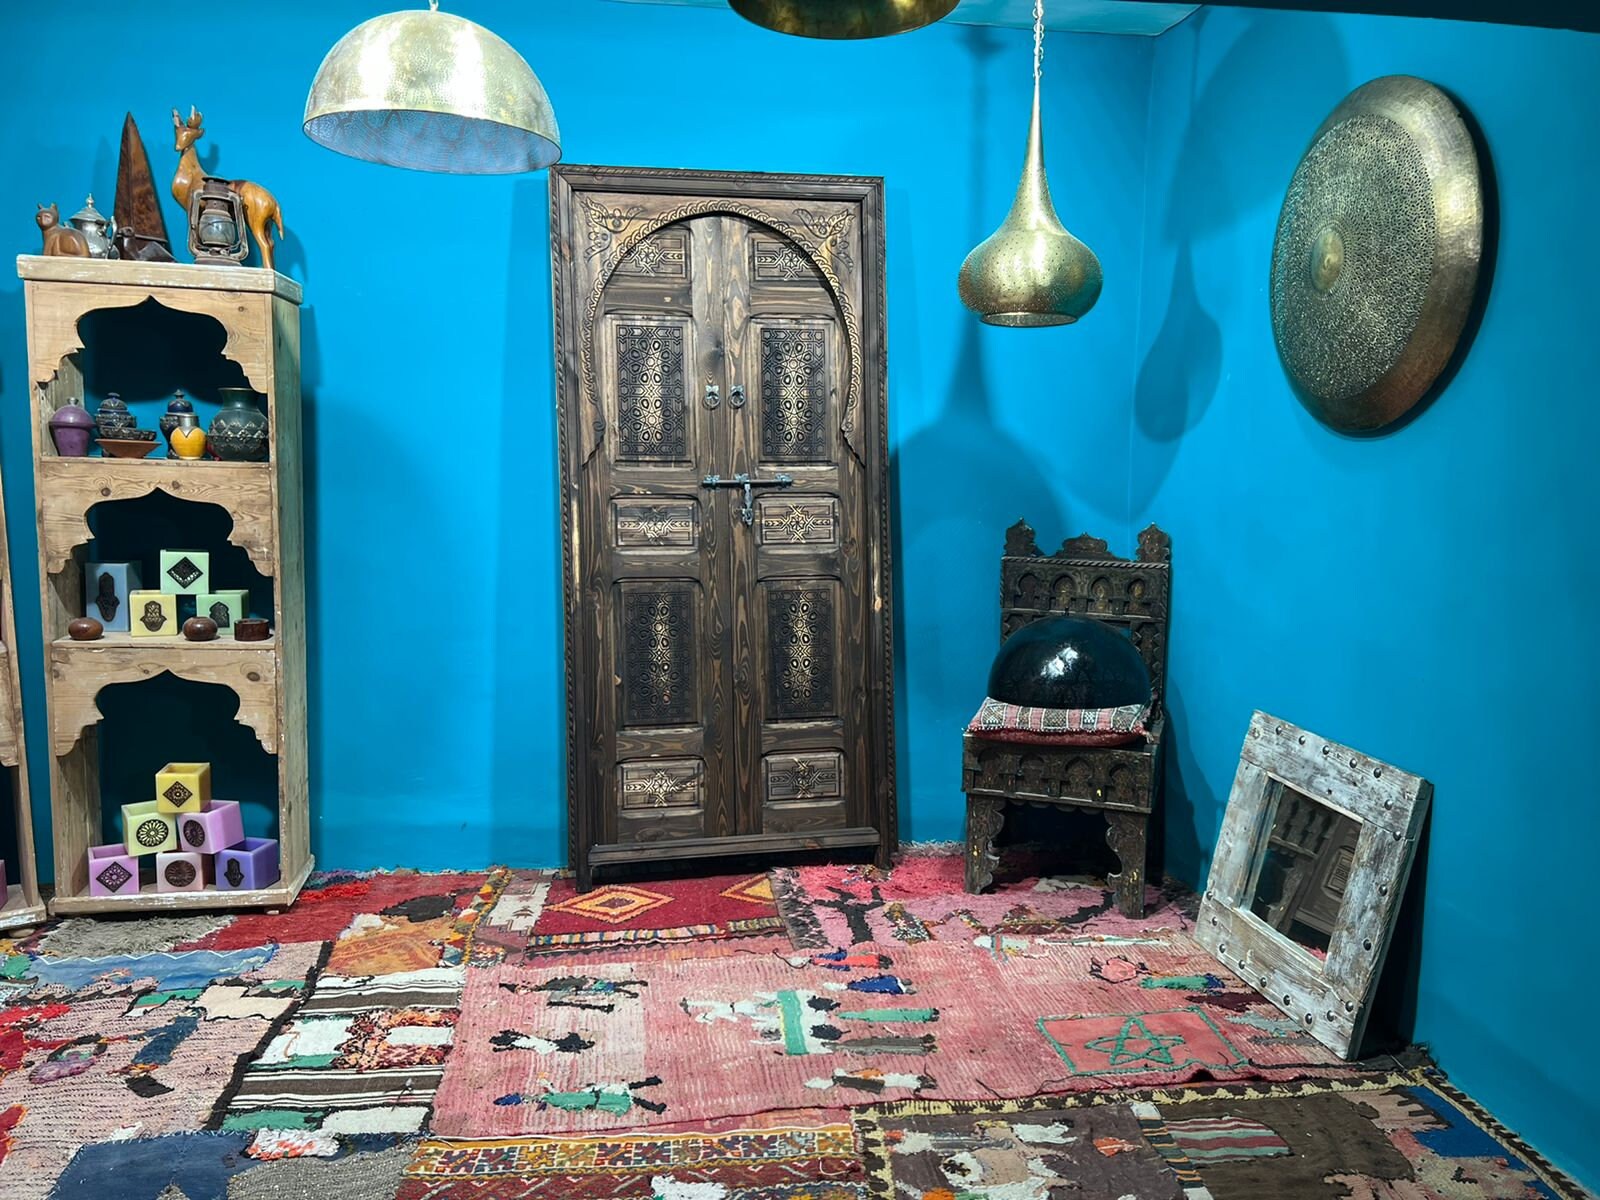 Porte d'exterieur et d intérieure, Porte marocaine, Wall deco Double Carved Wooden Door marocaine, déco murale, tailler la porte sculpté ,